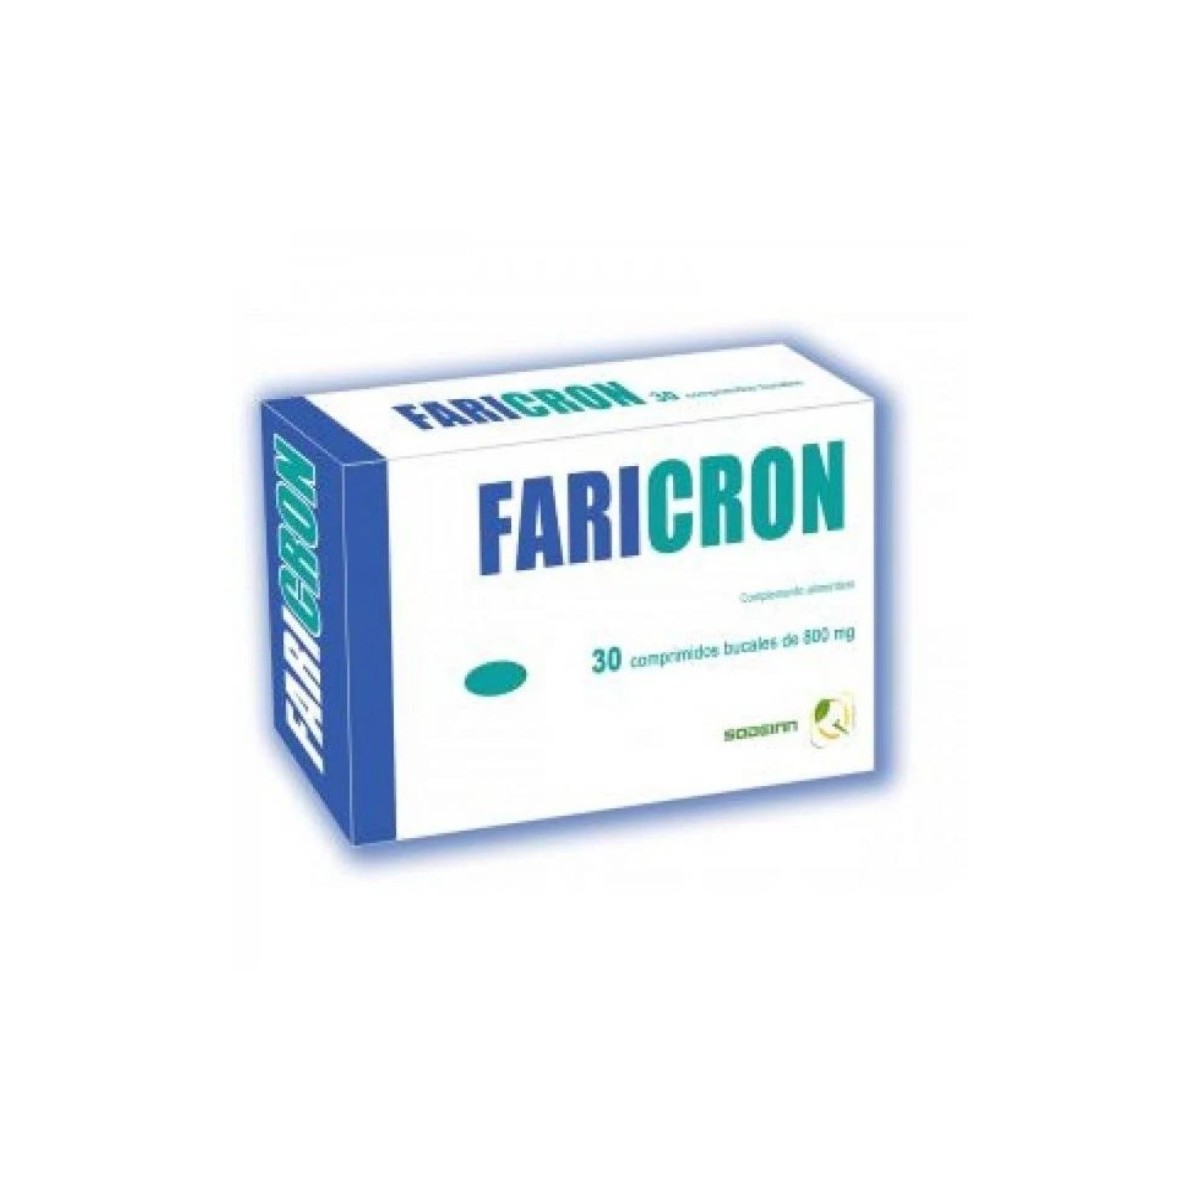 faricron 30 comprimidos